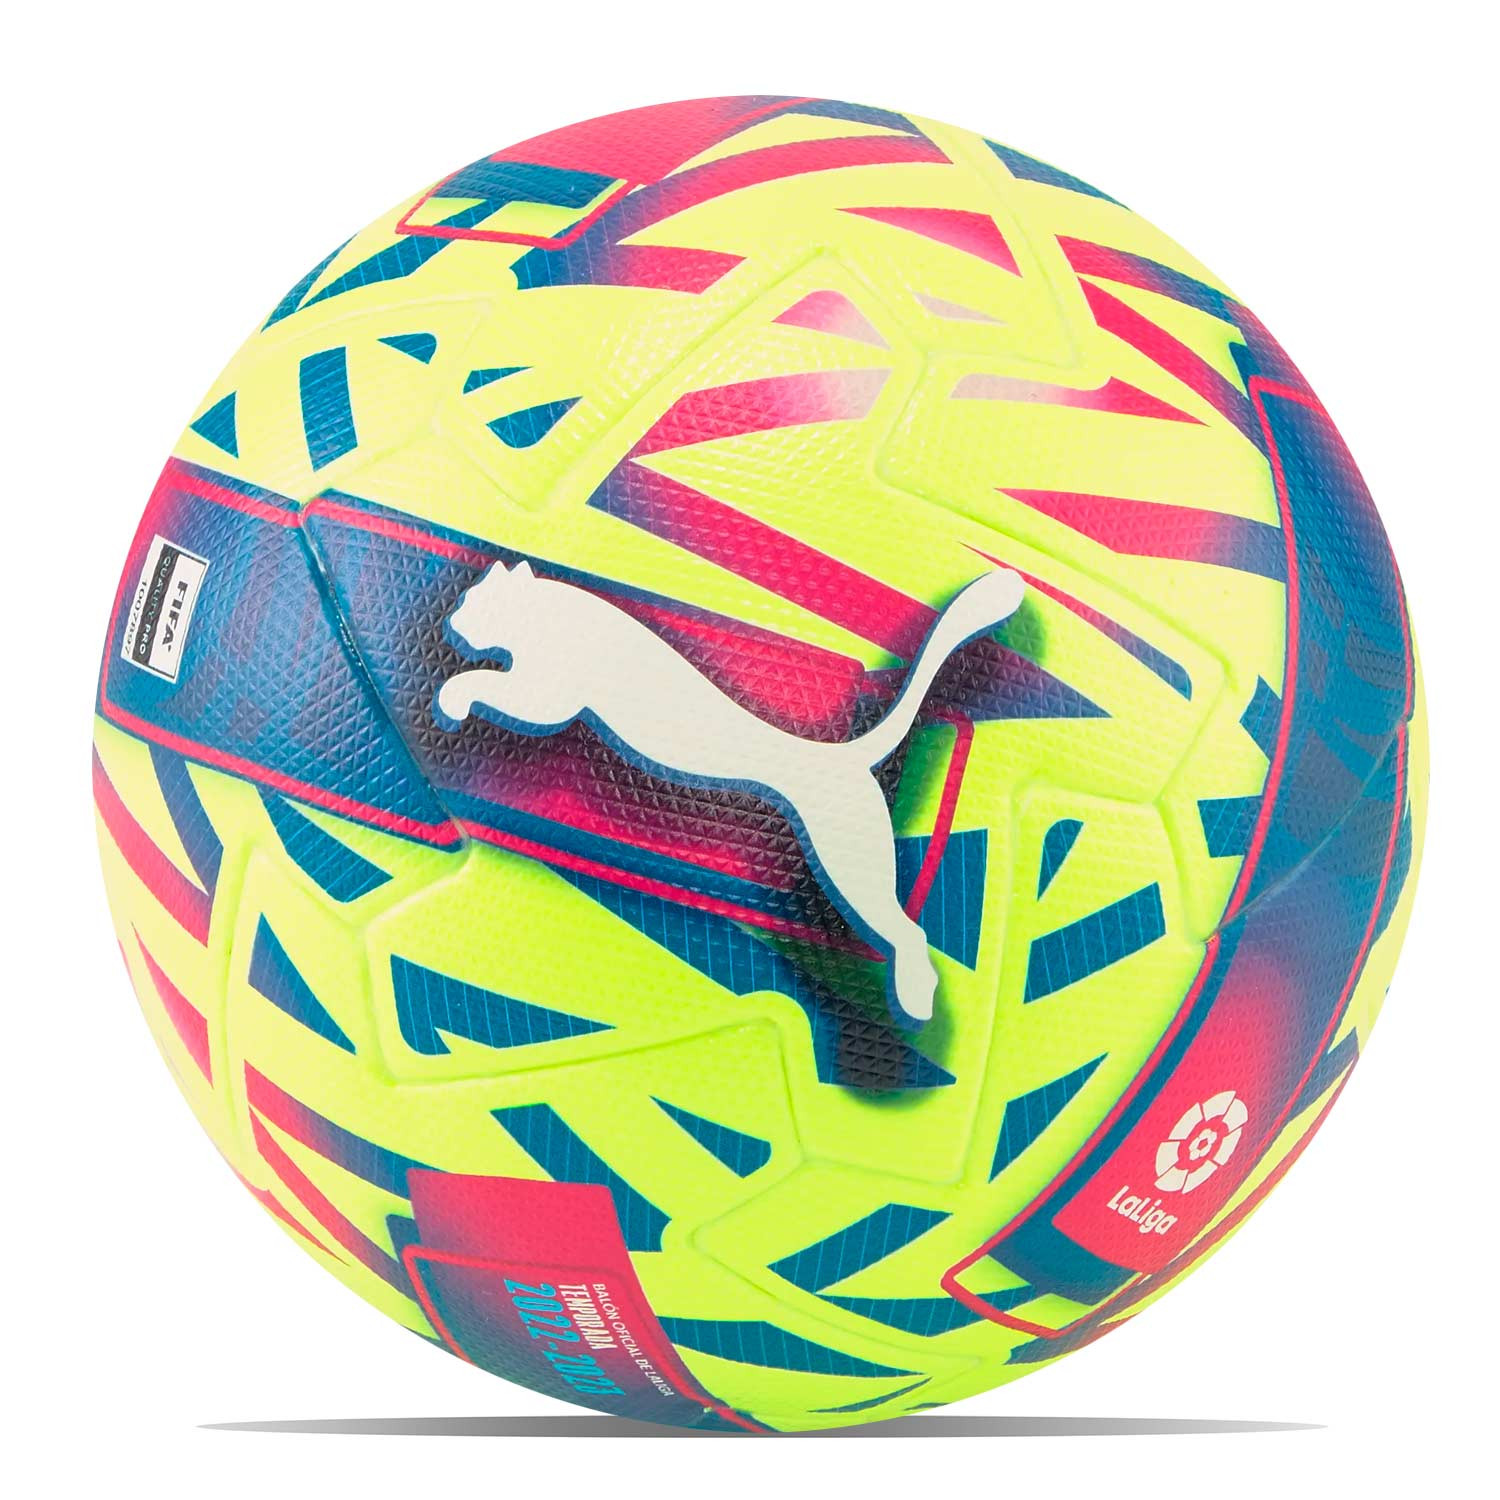 Balón Puma Orbita Serie A 23-24 FIFA Quality t5 blanco